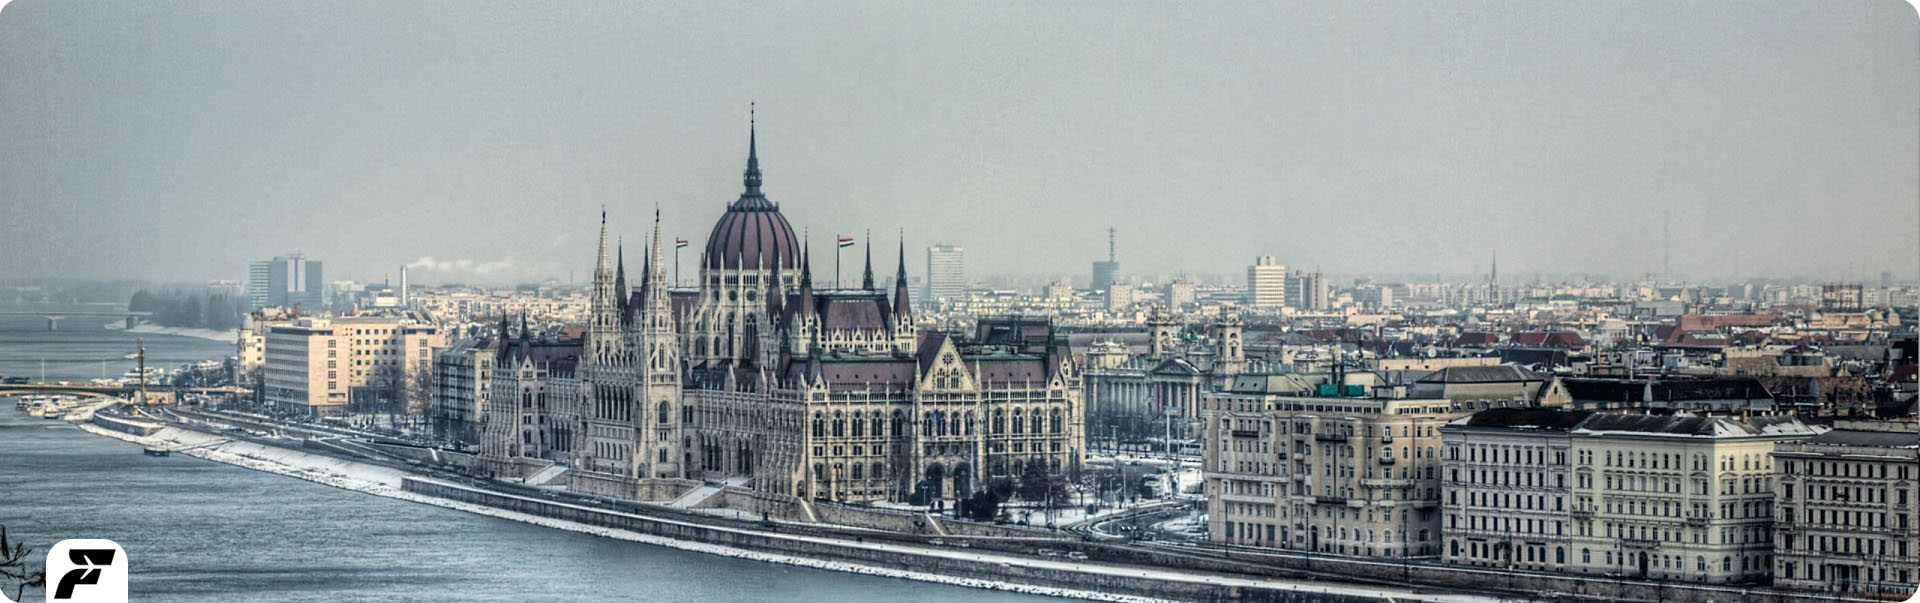 رزرو هتل در بوداپست